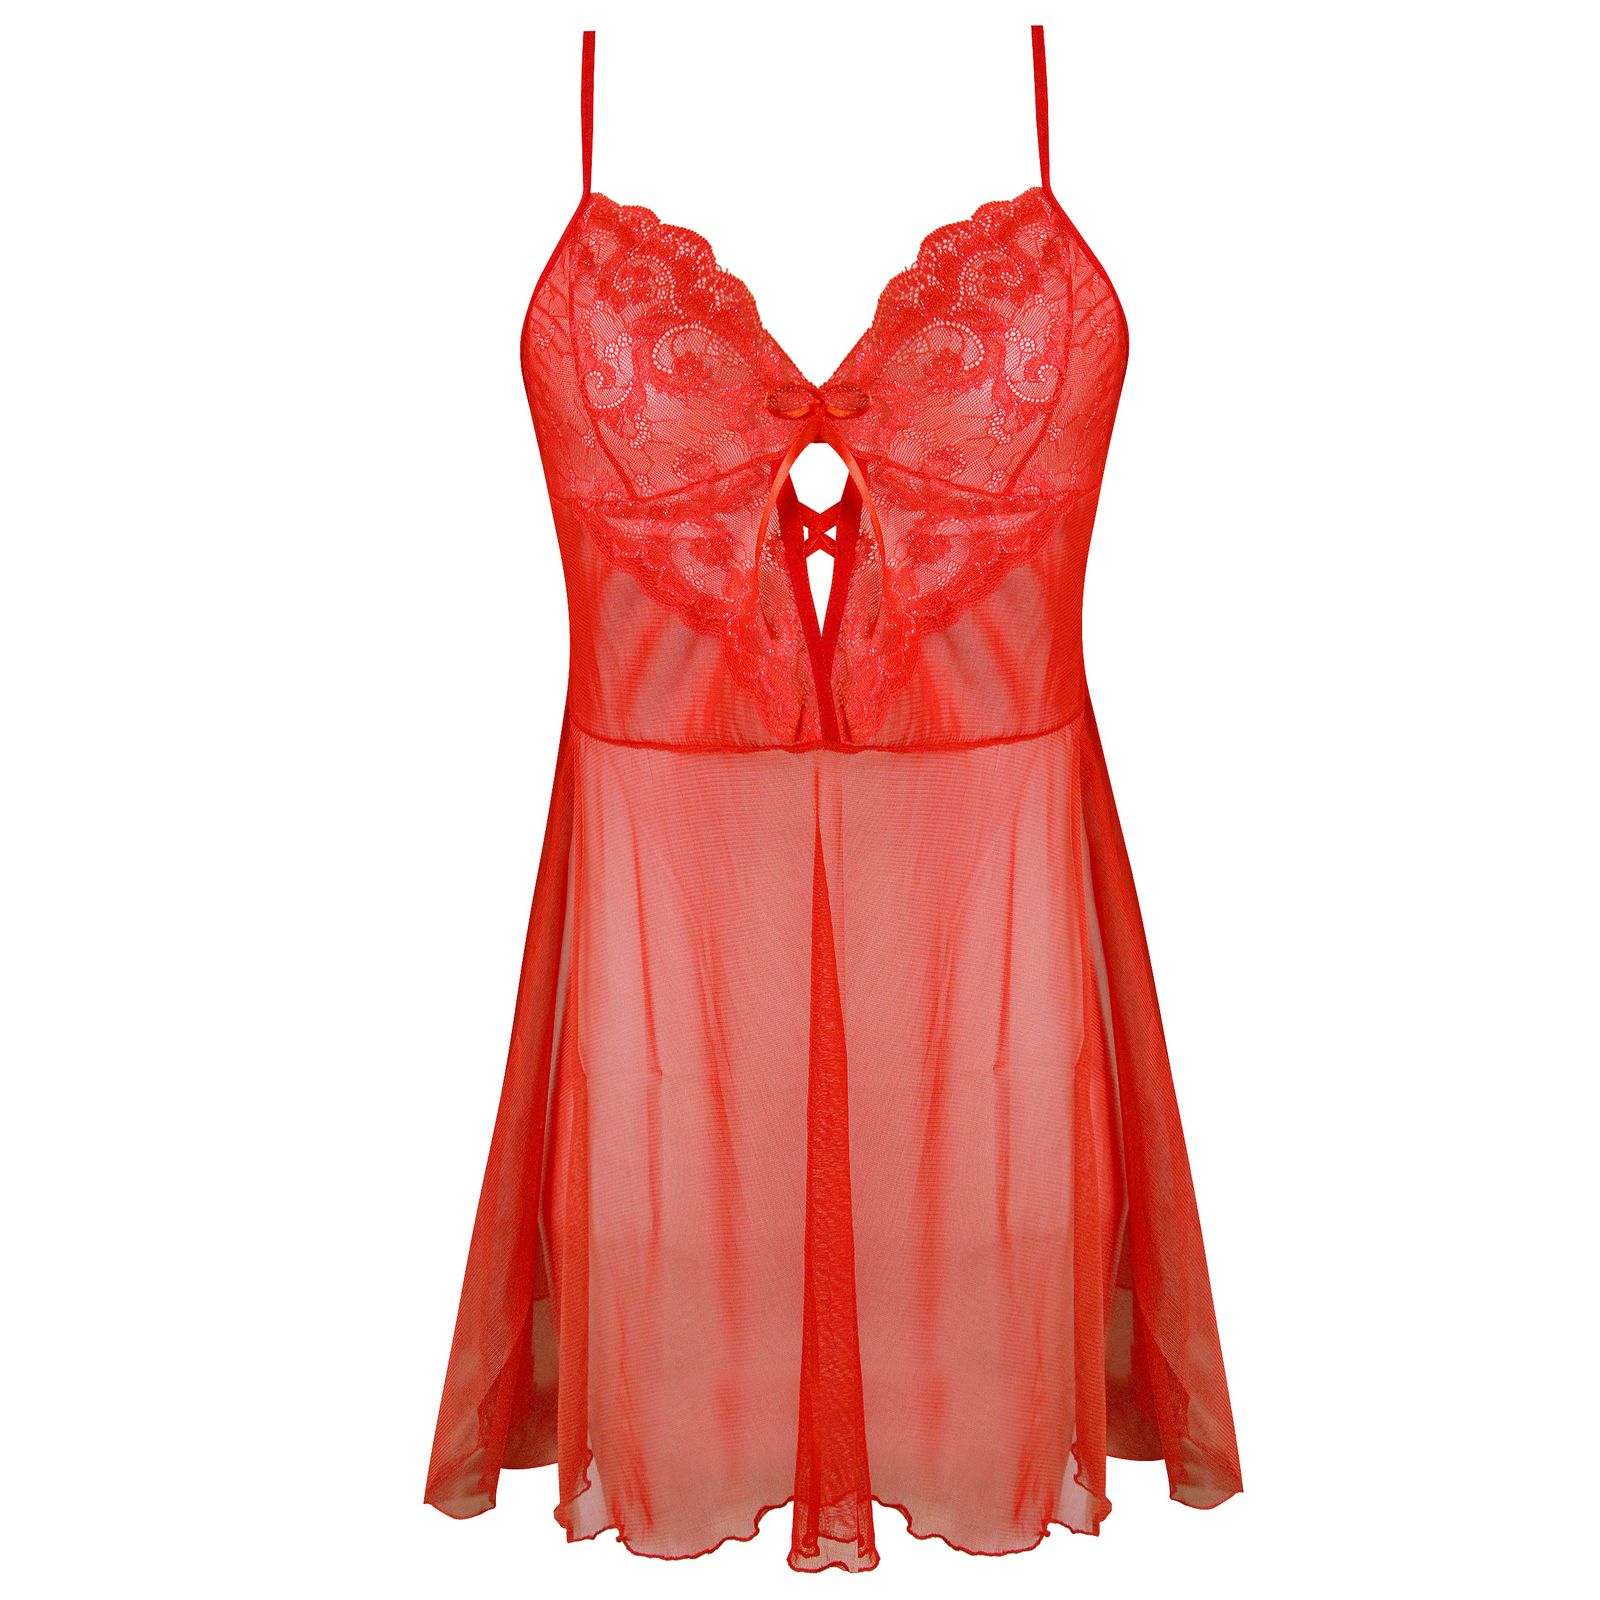 لباس خواب زنانه ماییلدا مدل 3752-512 رنگ قرمز -  - 2